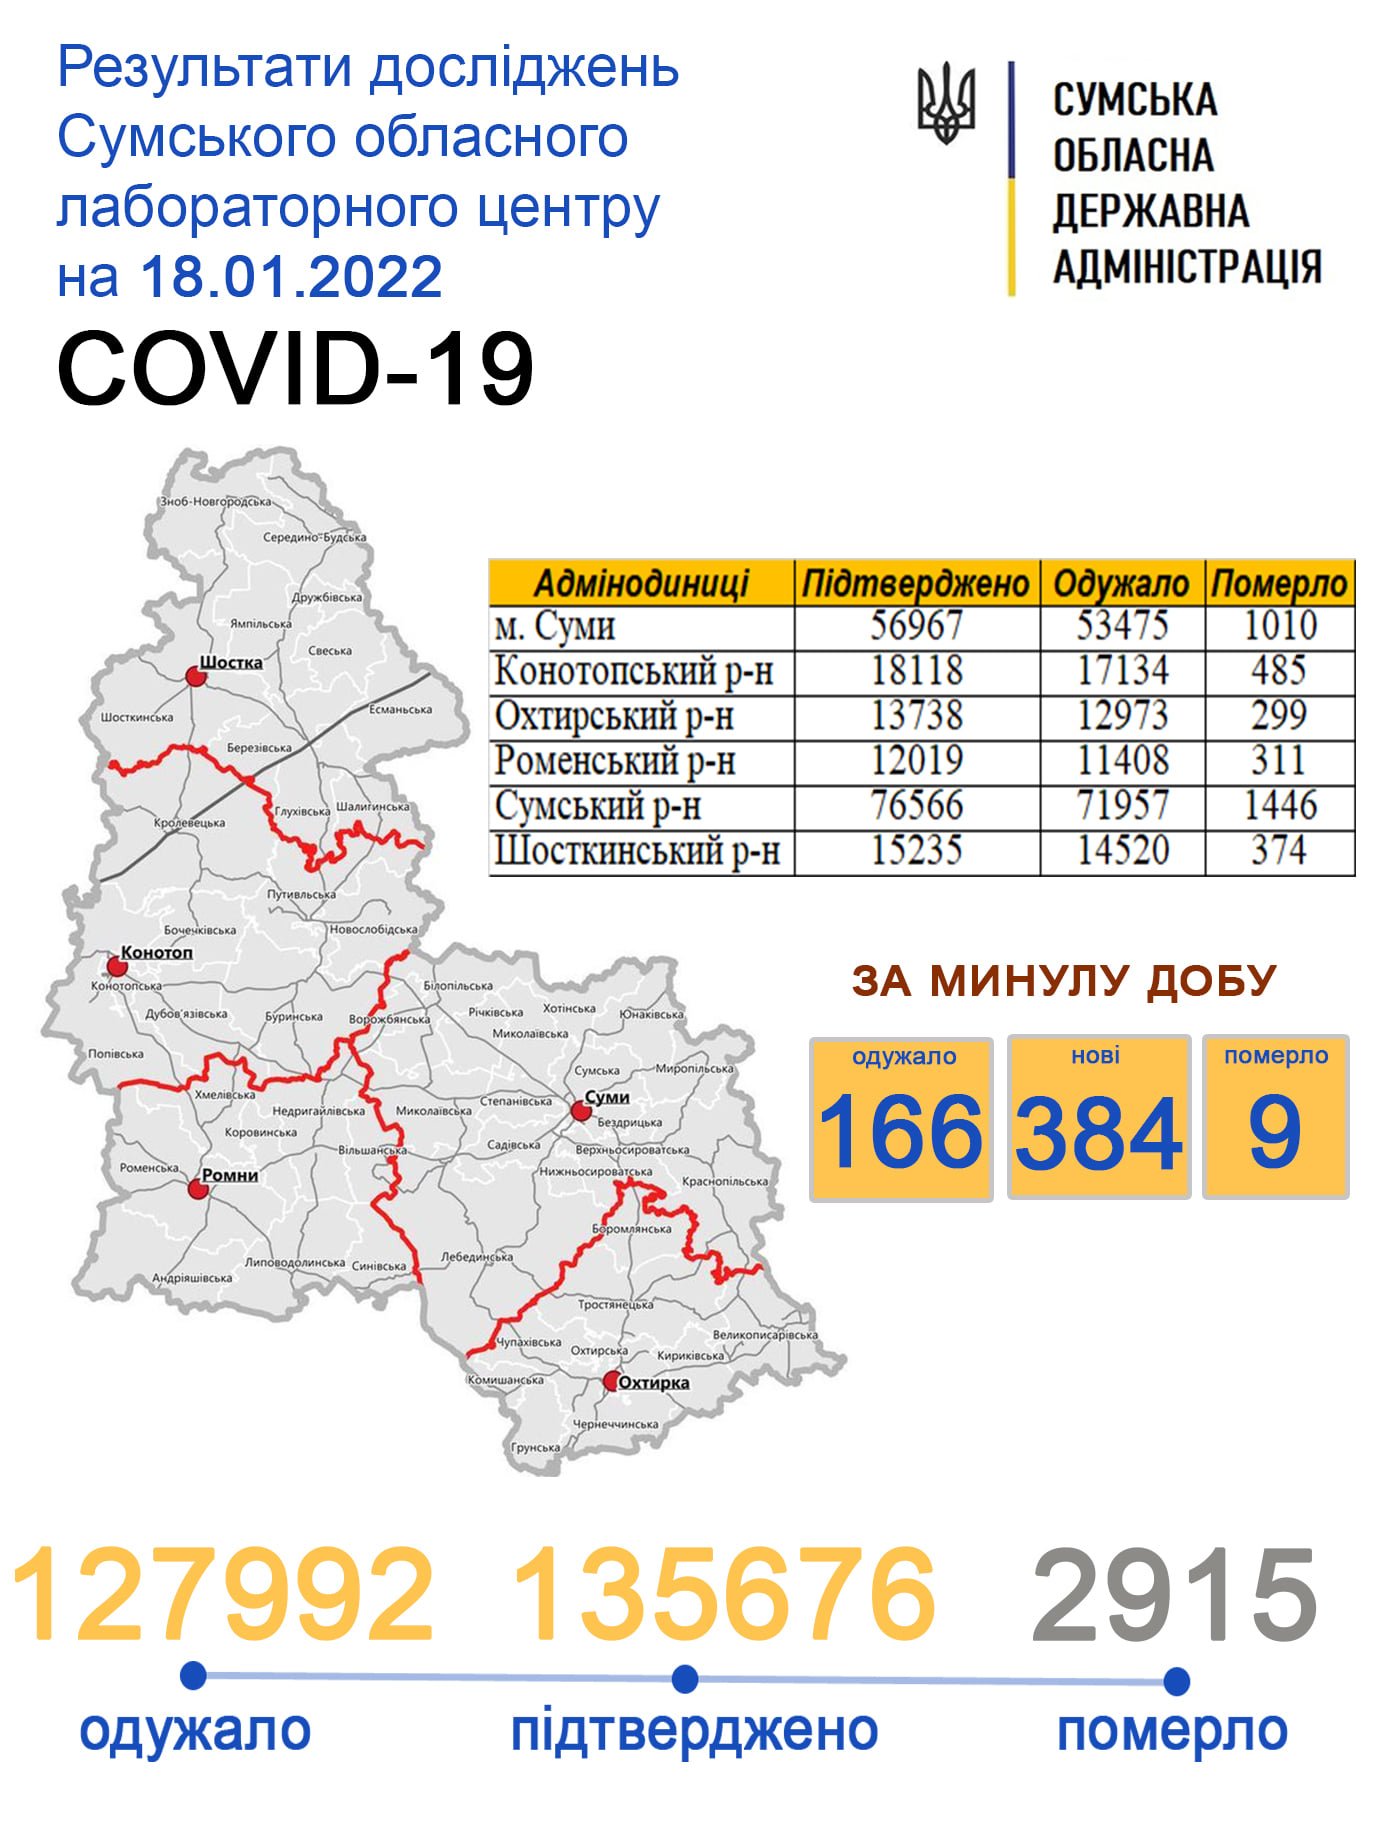     covid-19  384 